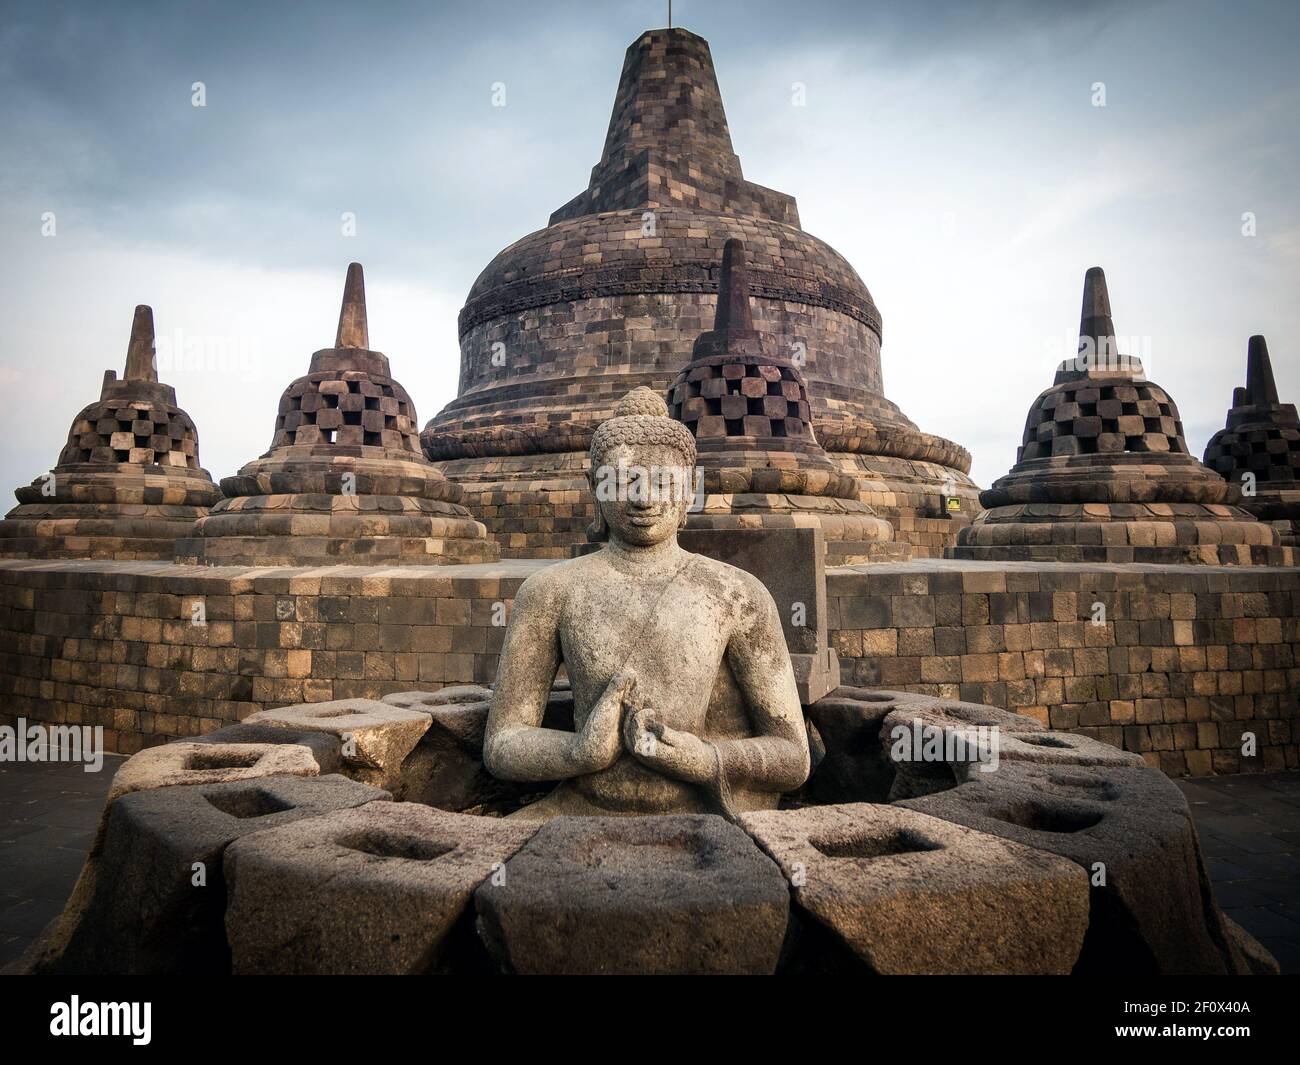 Ruinas antiguas de Borobudur, un templo budista mahayana del siglo 9th en Magelang Regency cerca de Yogyakarta en Java Central, Indonesia. Foto de stock